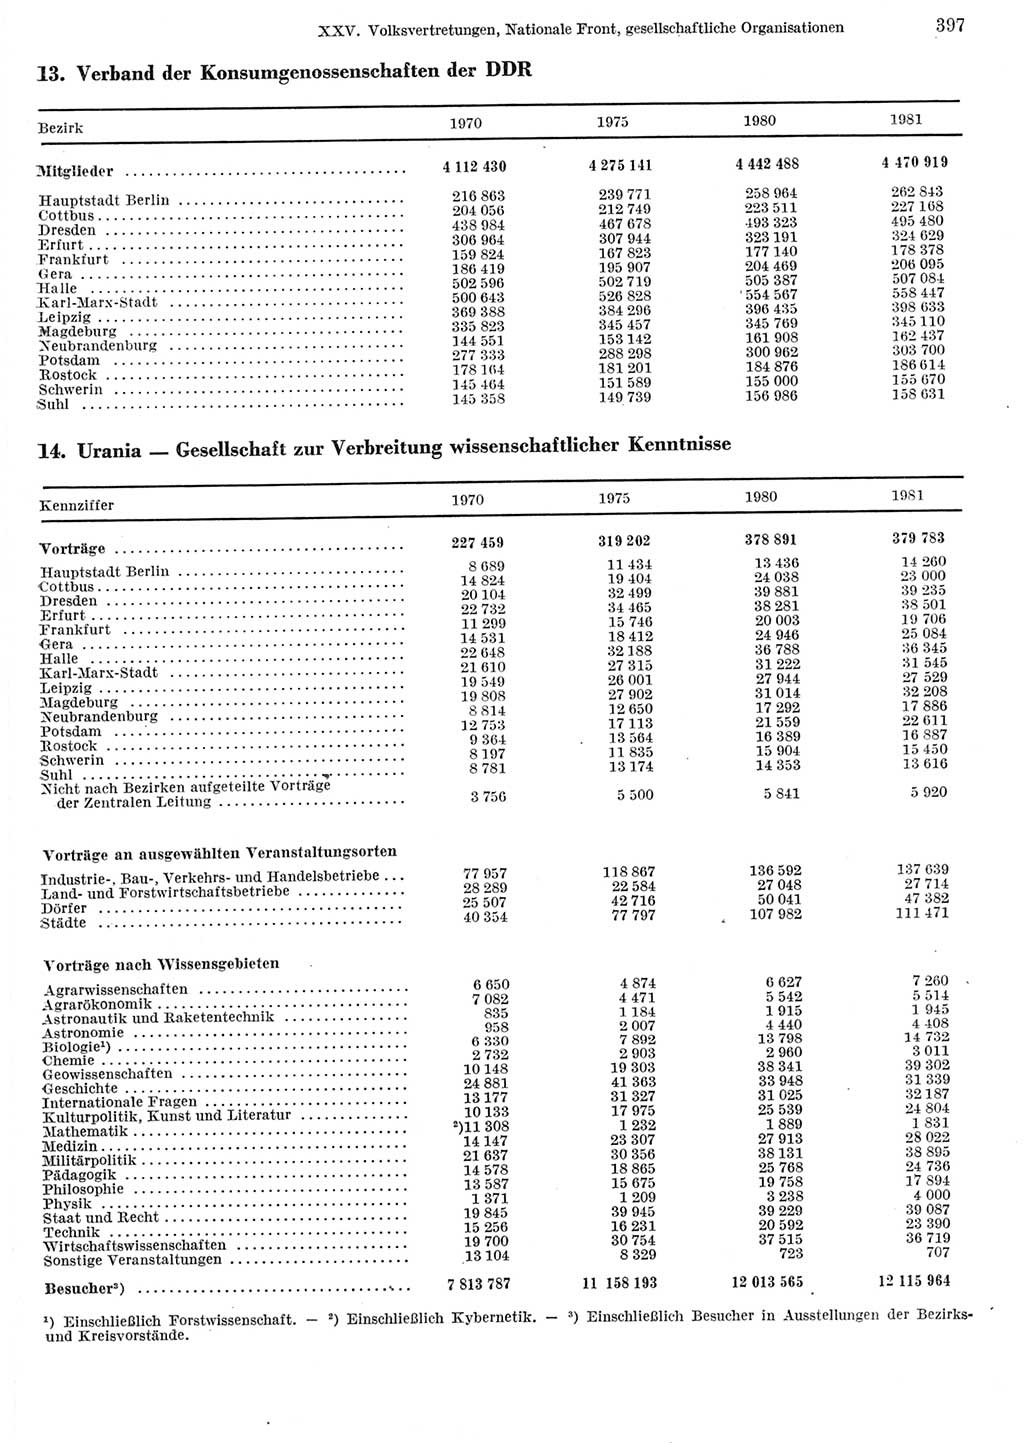 Statistisches Jahrbuch der Deutschen Demokratischen Republik (DDR) 1982, Seite 397 (Stat. Jb. DDR 1982, S. 397)